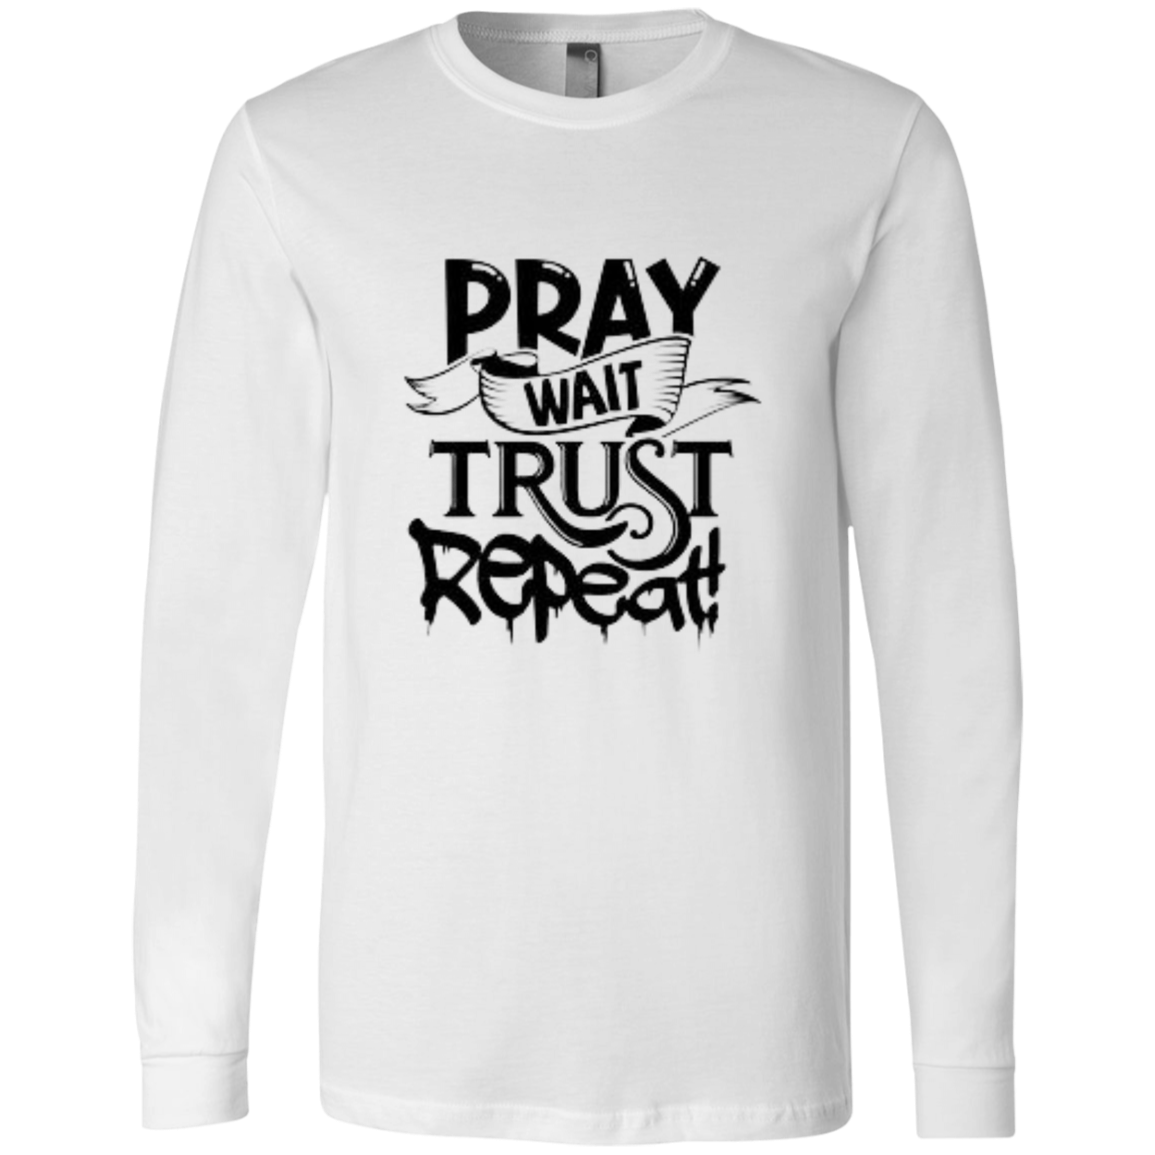 Pray Wait Trust Repeat Unisex Jersey LS T-Shirt, Pray Wait Trust Repeat For Women, Crew Neck Shirt for Women, Christian Shirts for Women, Jesus Shirt, Gift for Women, Gift for Her, Christian Clothing, Unisex Fit